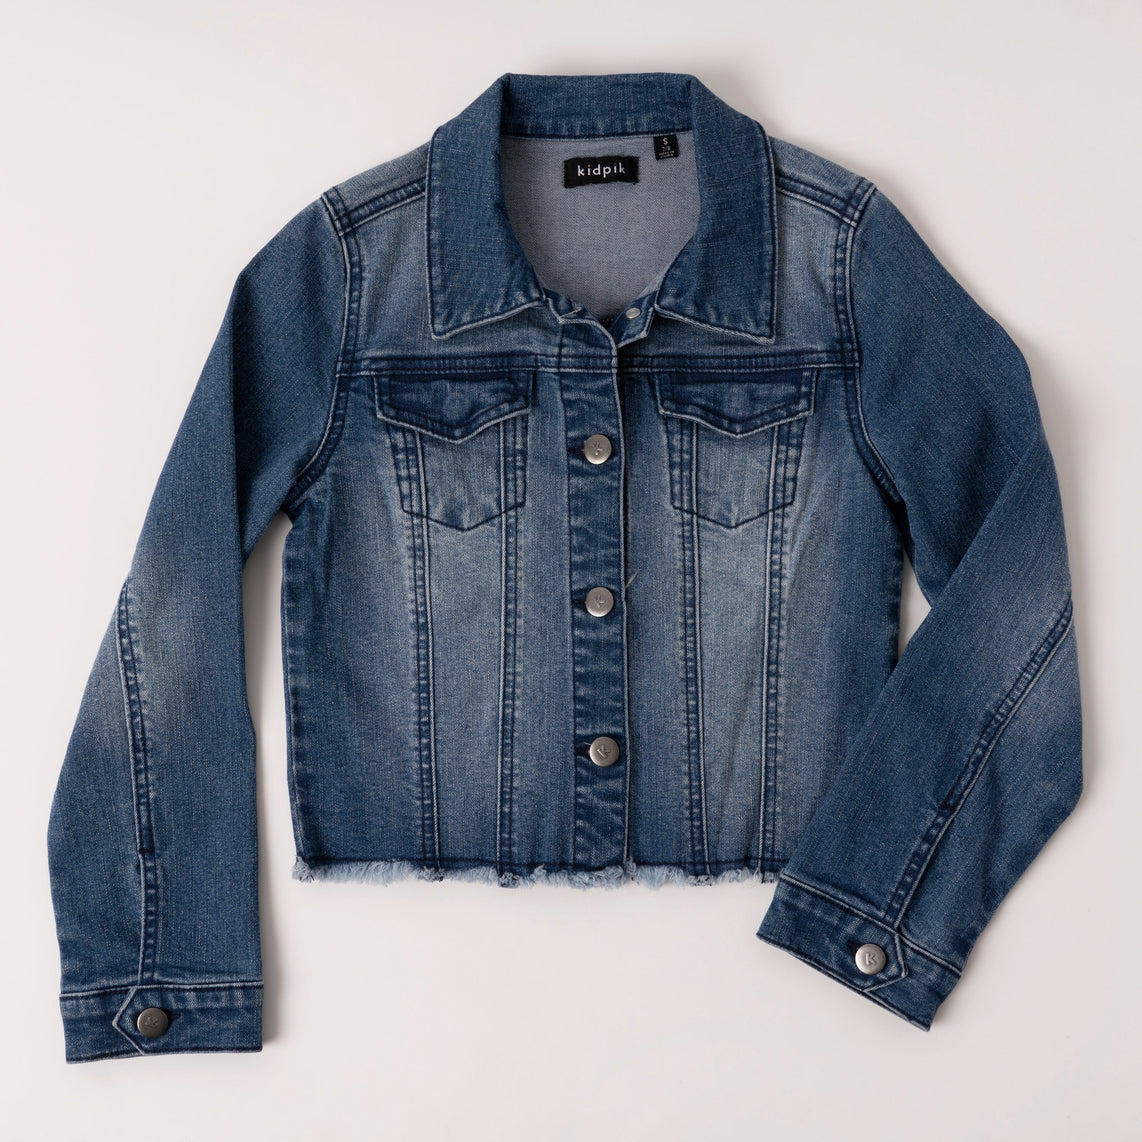 Get Stud Detail Blue Denim Jacket at ₹ 989 | LBB Shop